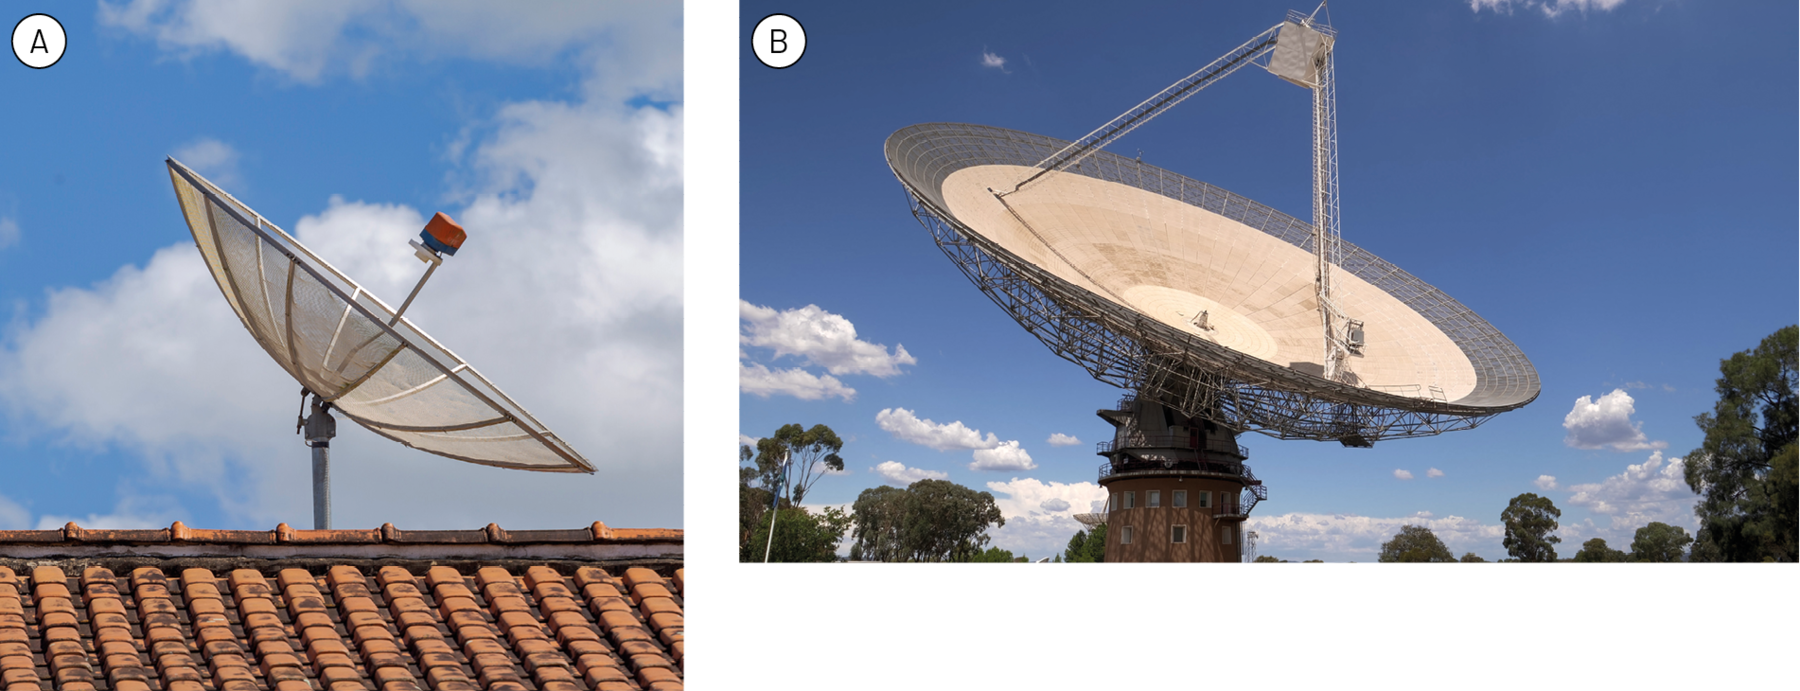 Fotografia A. Antena parabólica no telhado de uma casa. Fotografia B. Grande antena côncava em cima de uma torre.